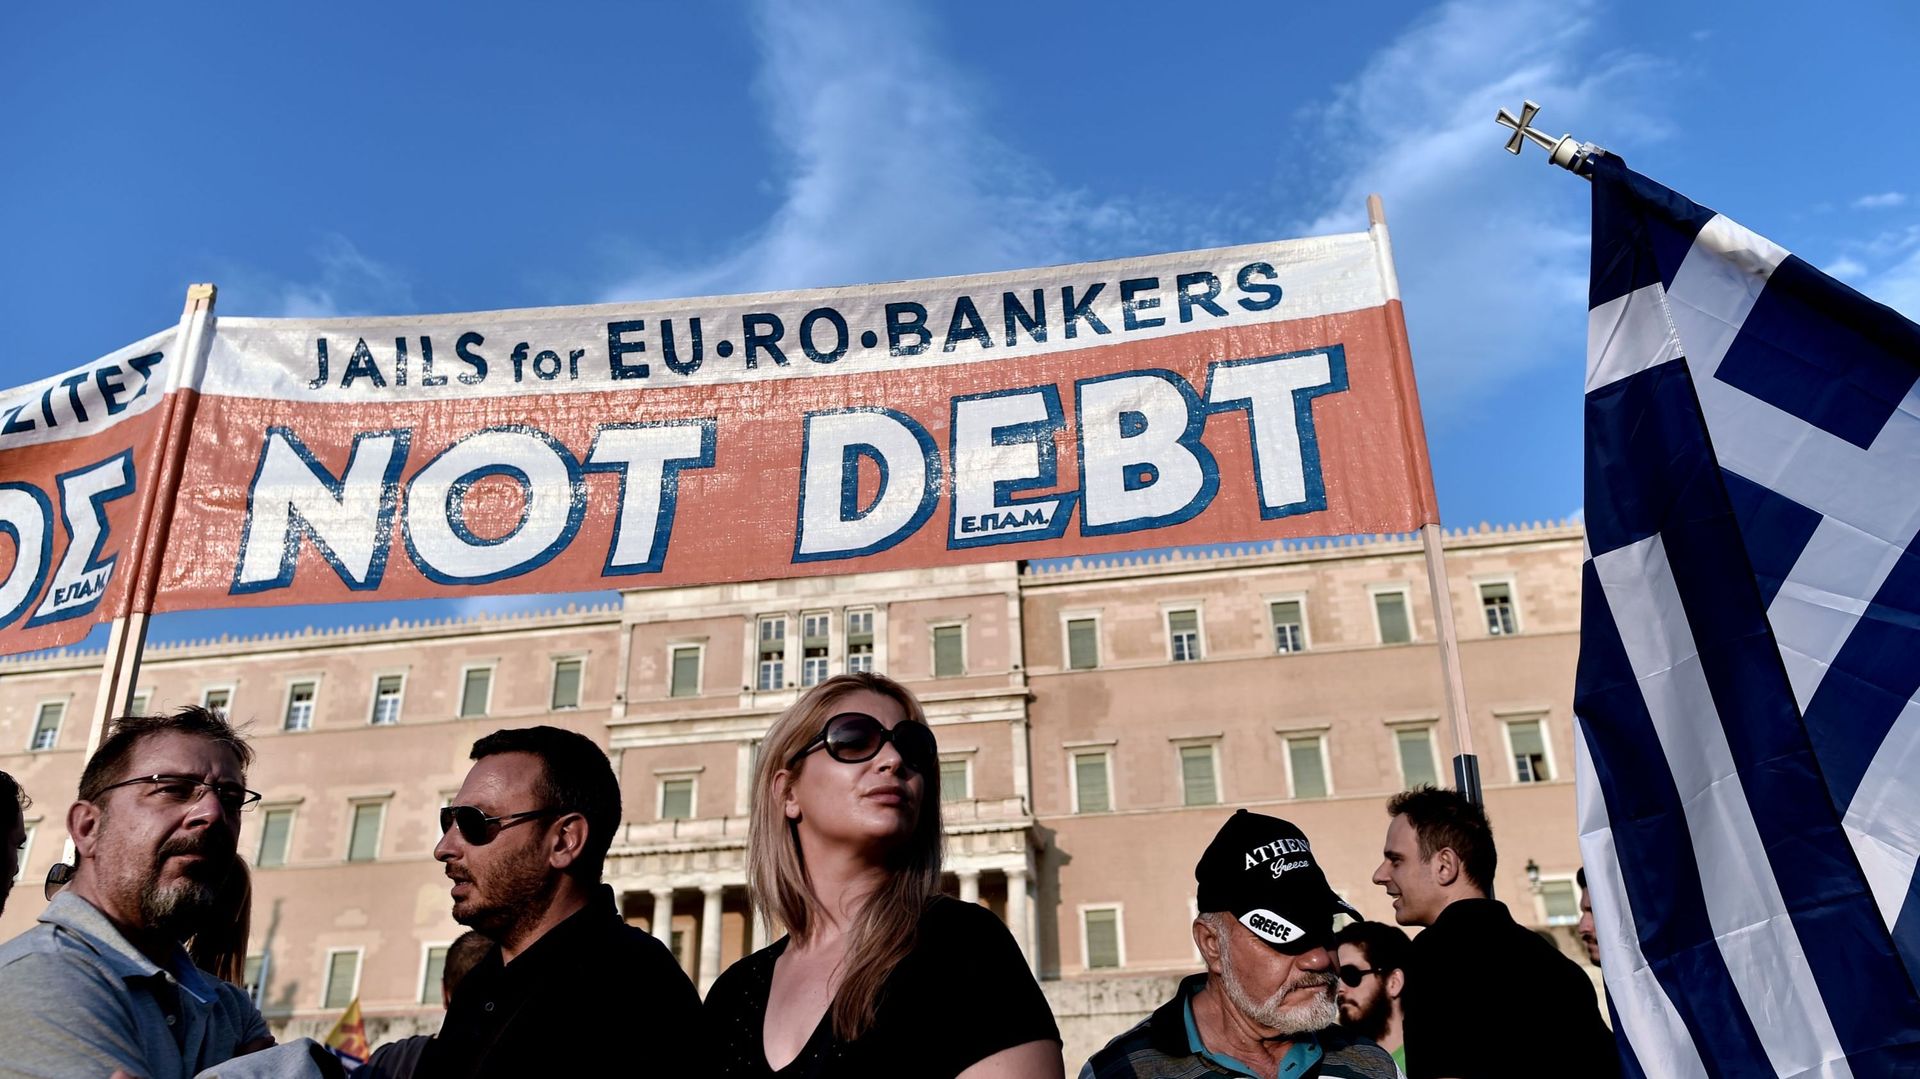 Référendum grec: l'UE met la pression pour le "oui", Athènes relativise